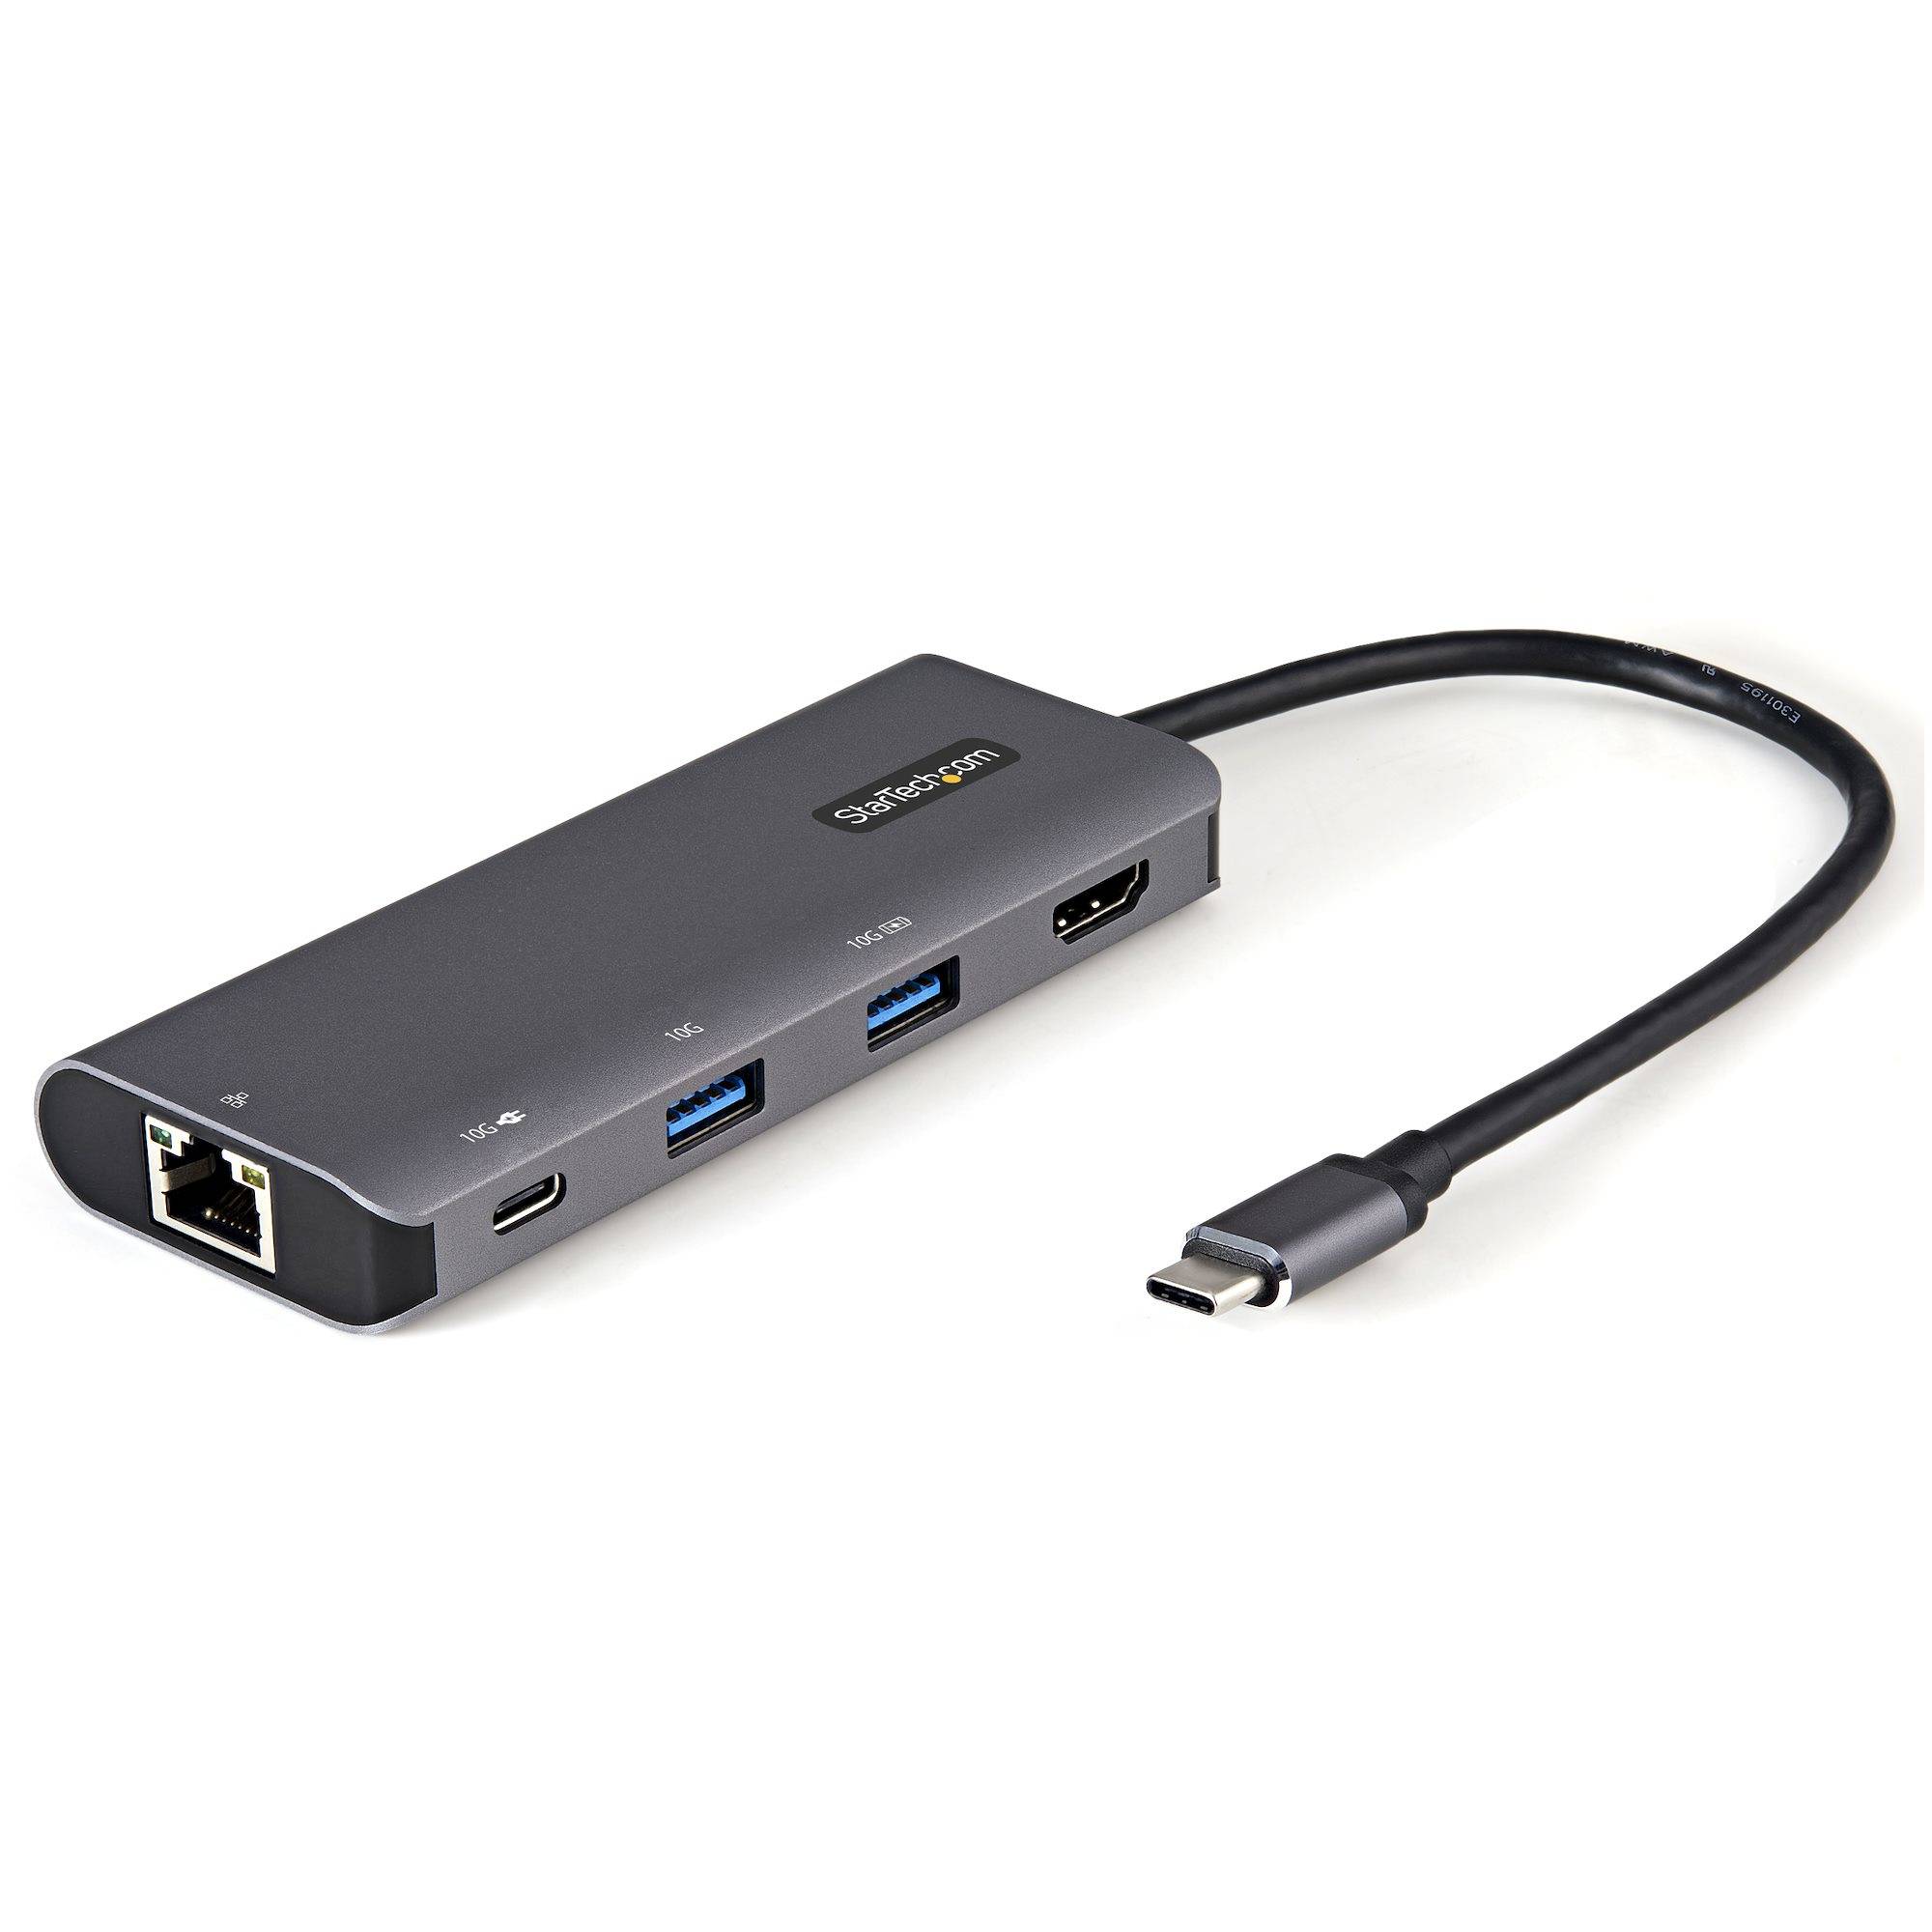 Rca Informatique - Image du produit : ADAPTATEUR MULTIPORT USB-C 10GBPS HUB USB 4K HDMI 100W PD